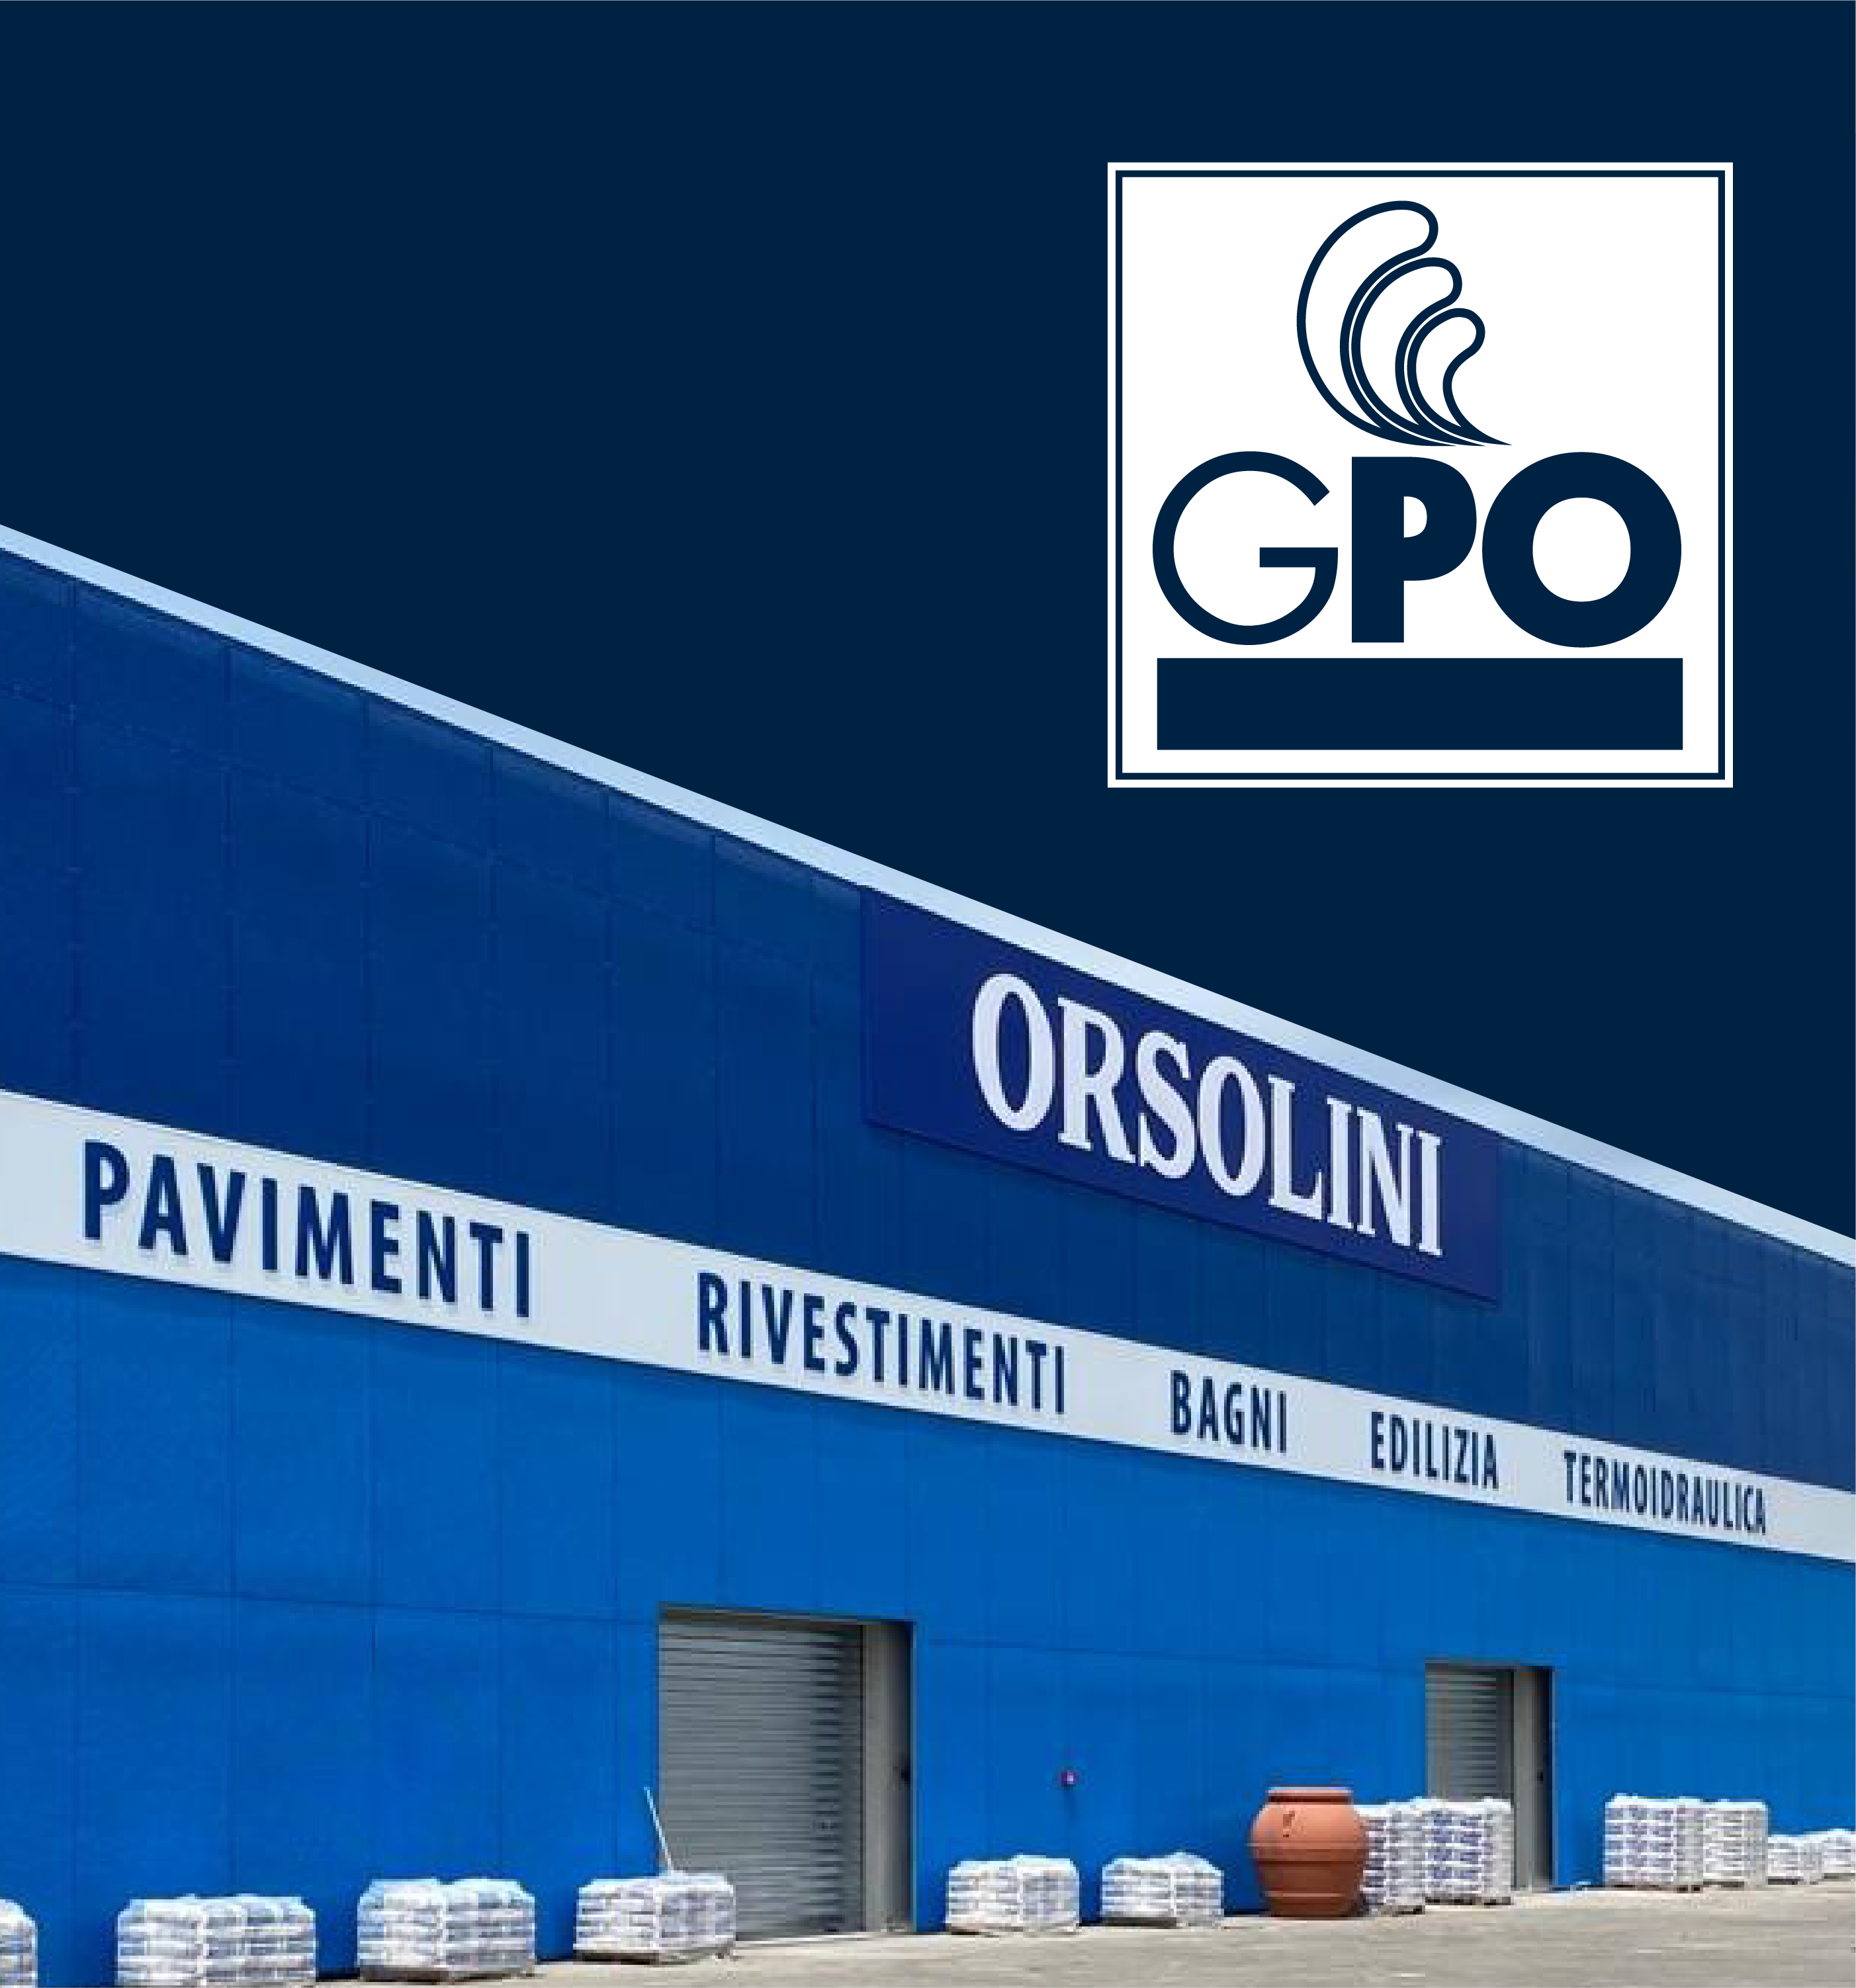 Orsolini + GPO